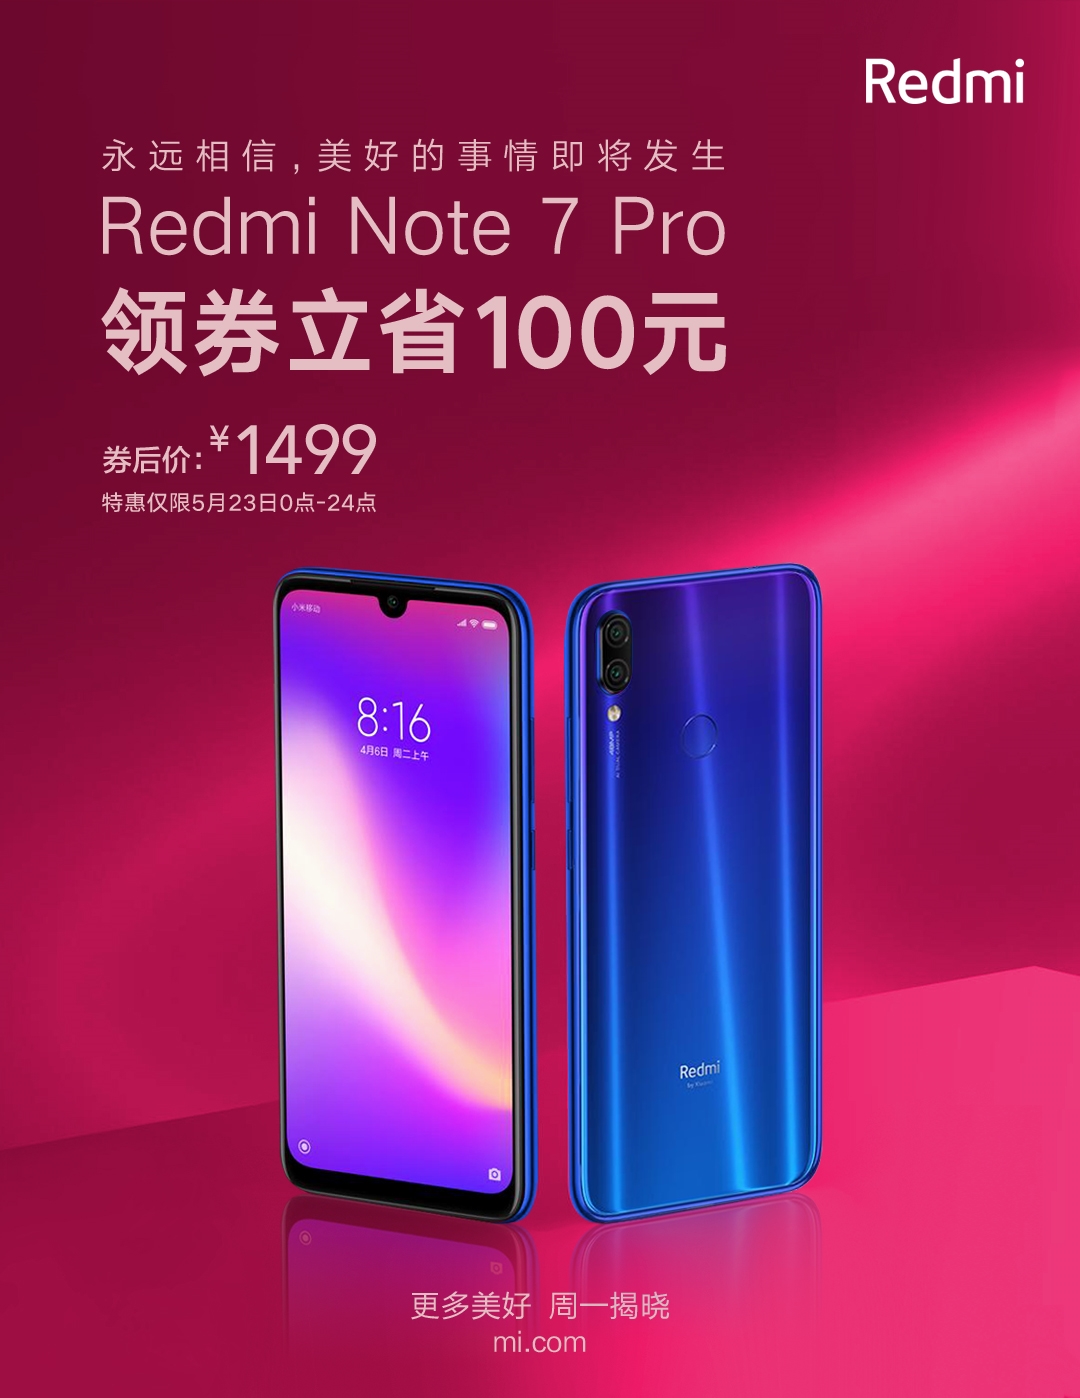 买不买？红米Note 7 Pro首次降价